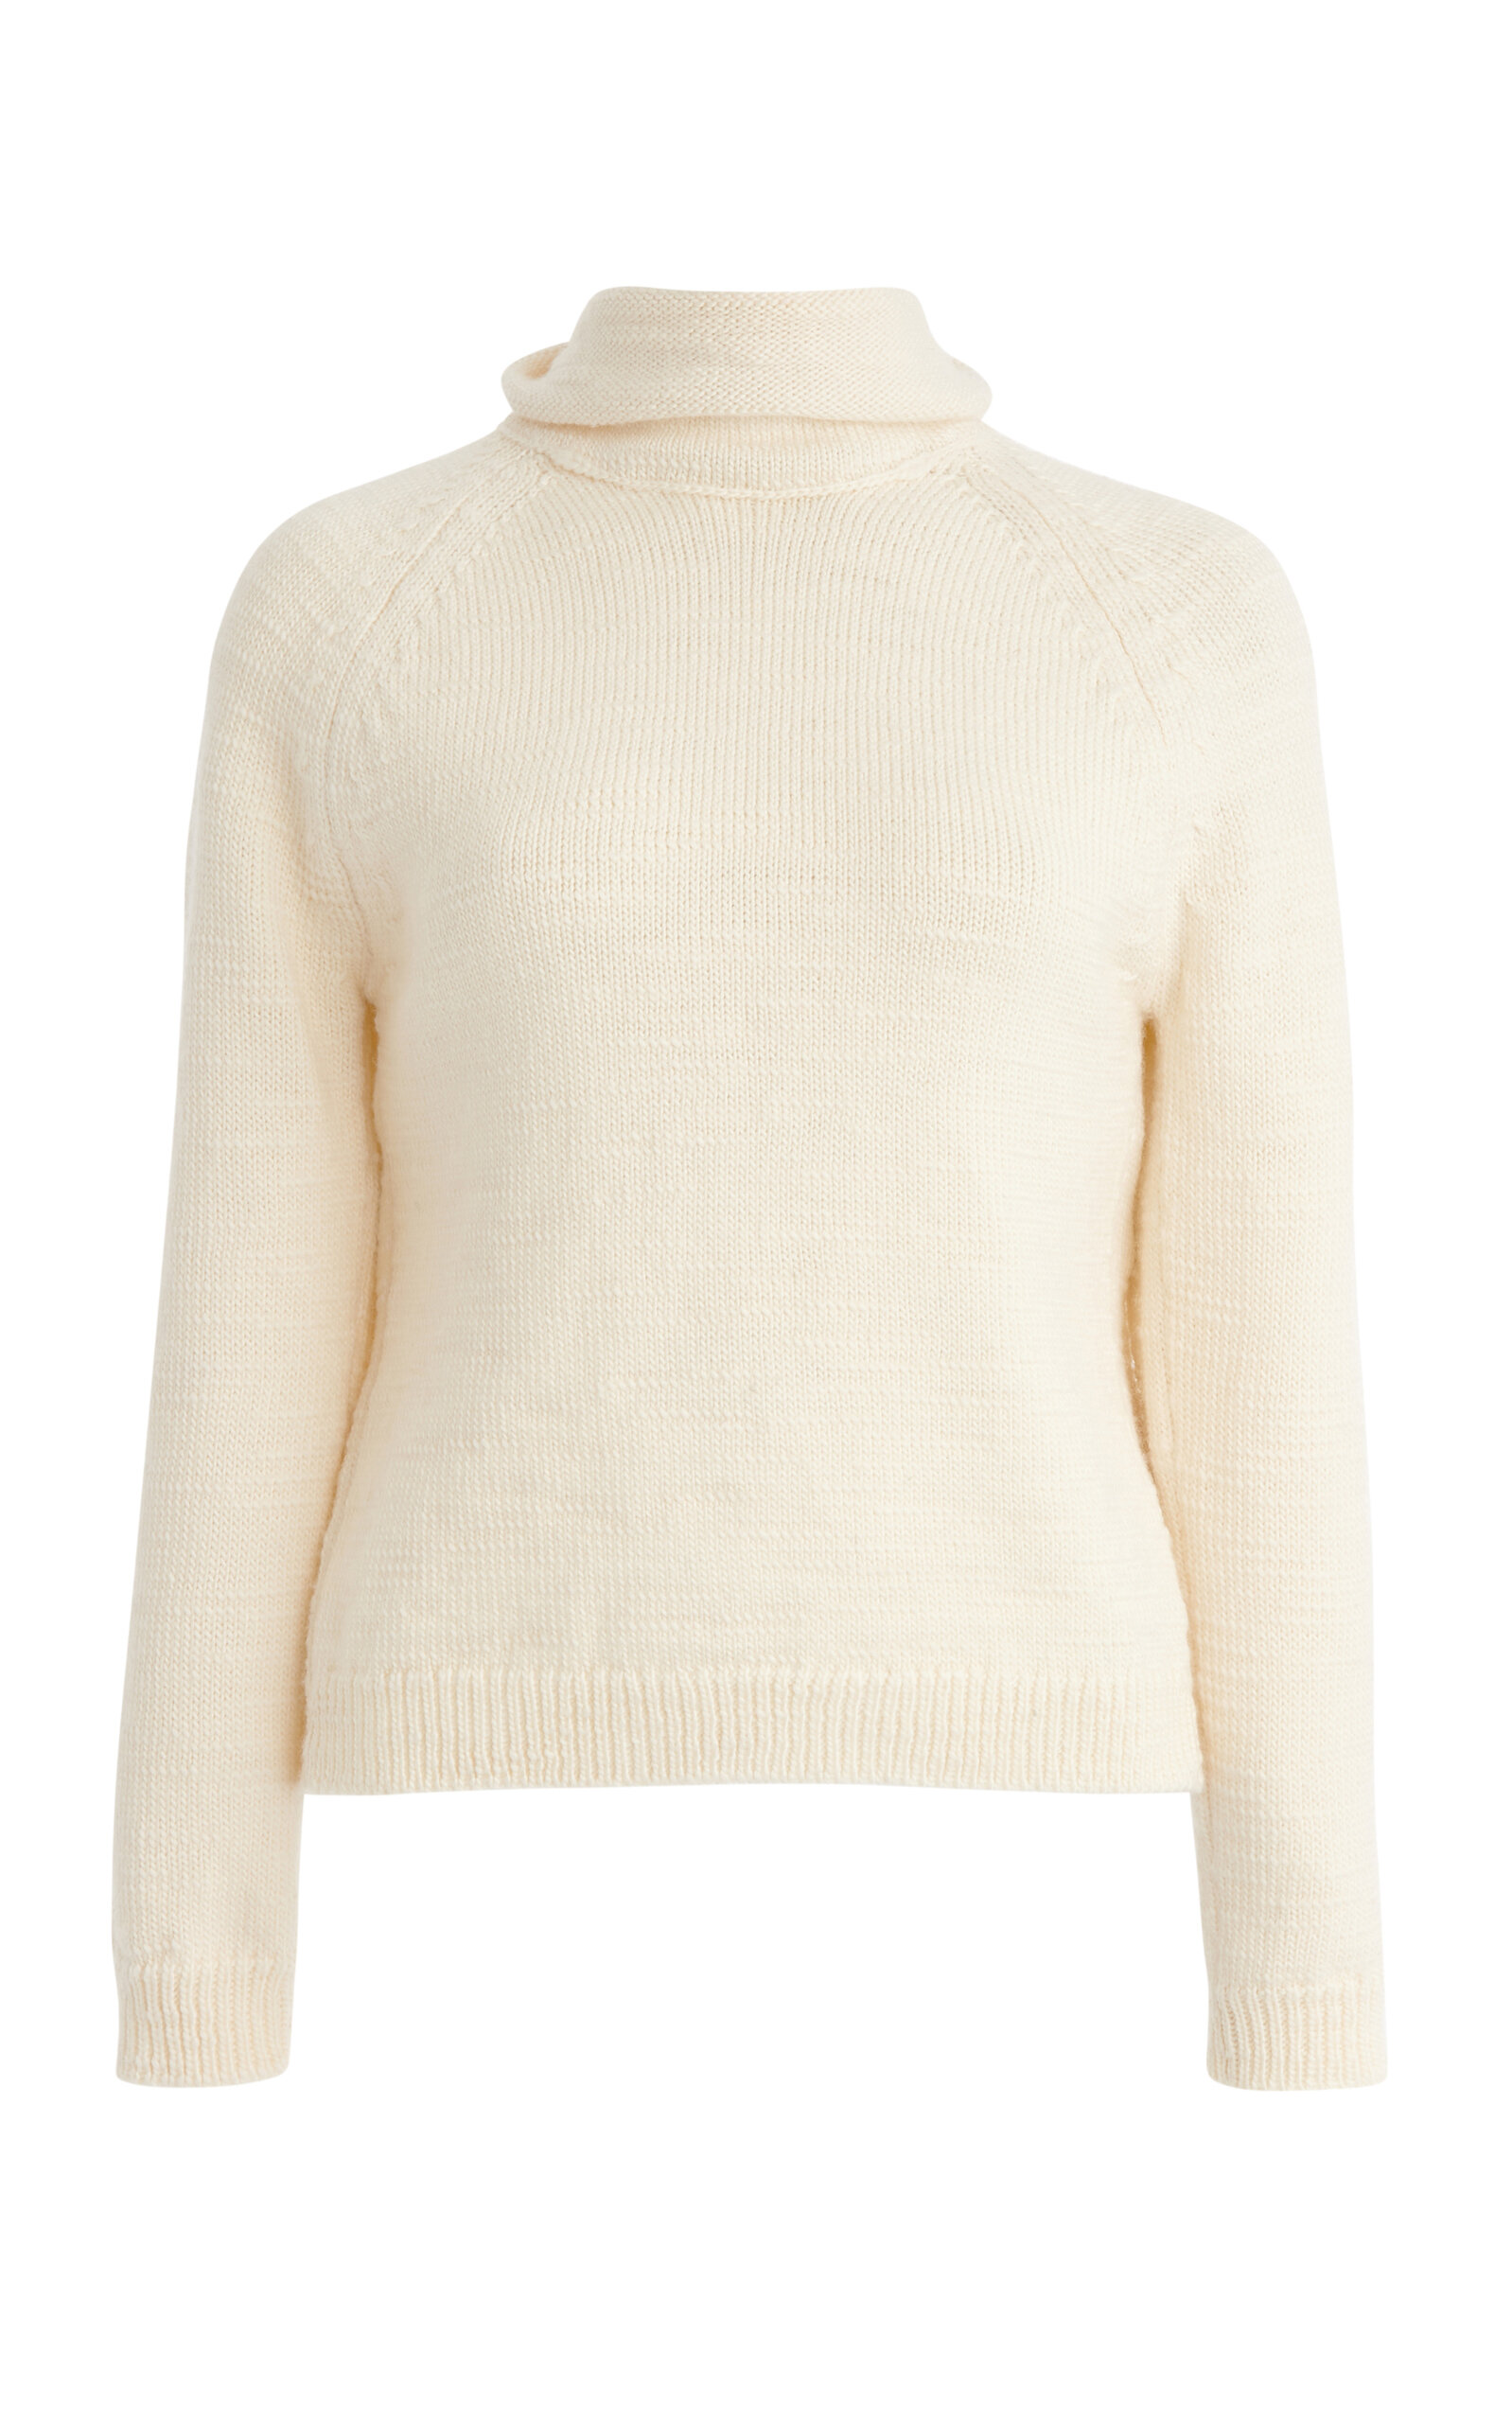 Maison Margiela Knit Wool Turtleneck Sweater In Ivory